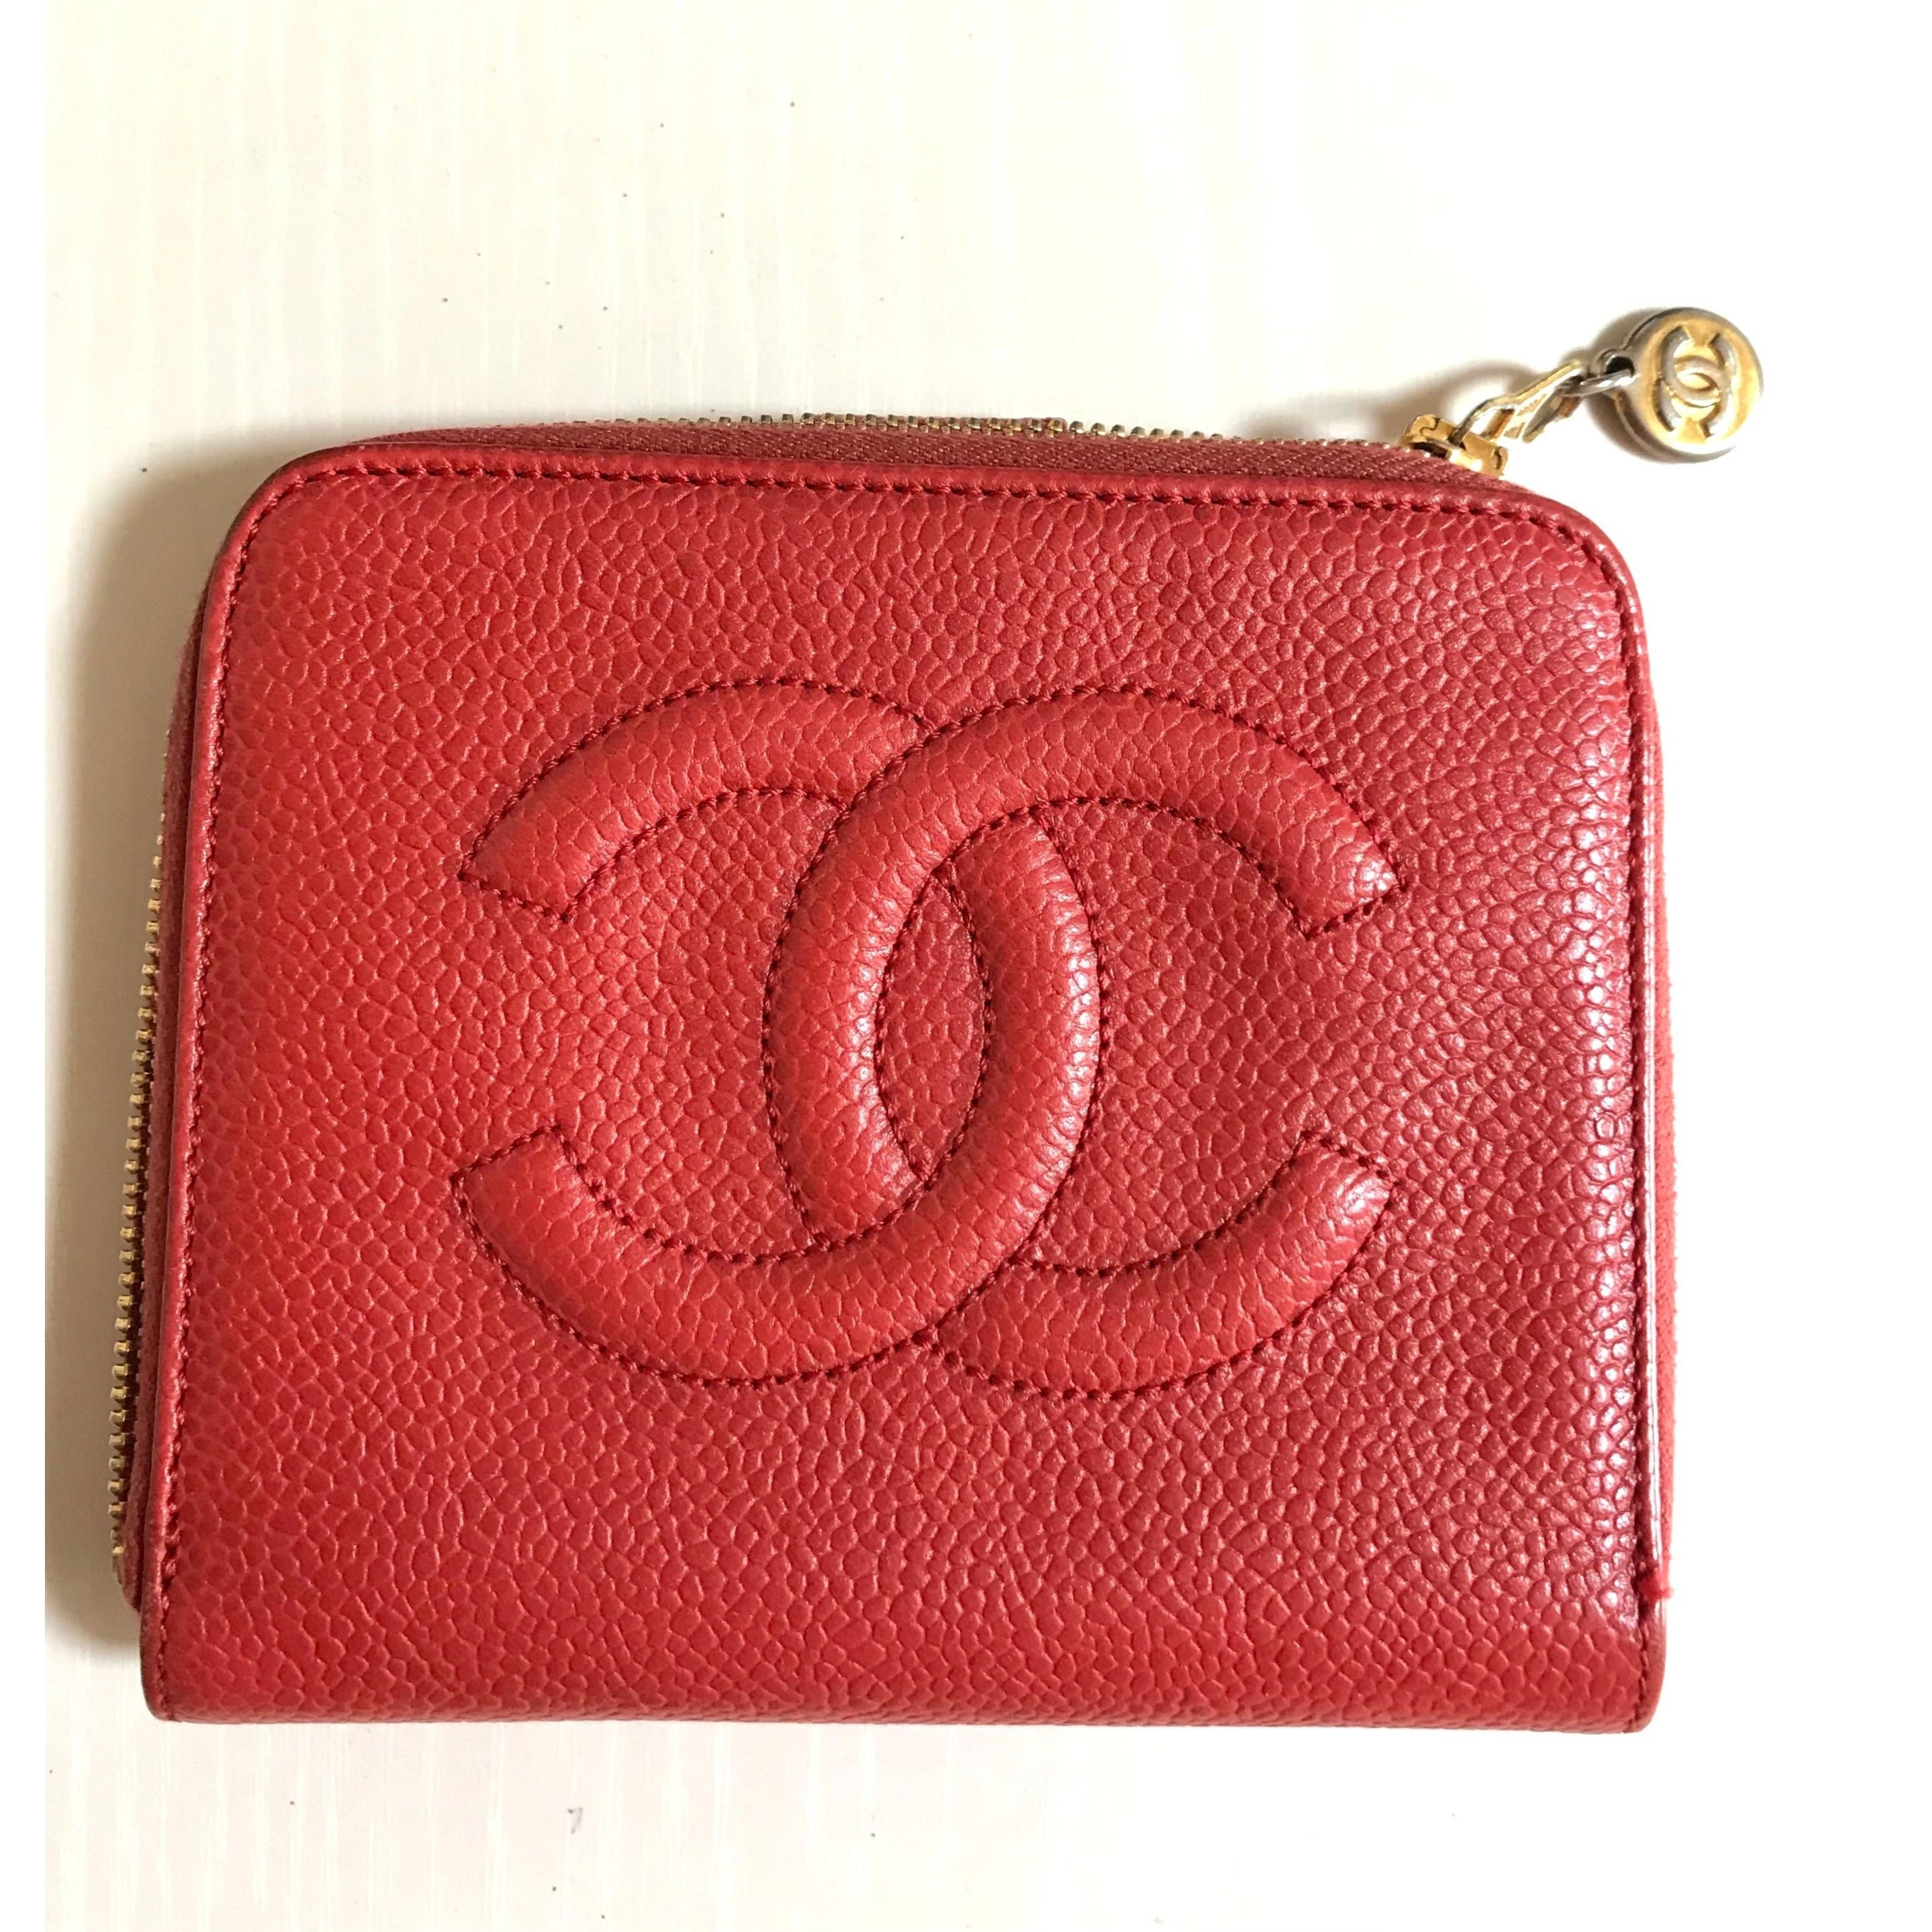 Vintage CHANEL red caviar skin round zipper wallet with CC stitch mark.  Best vintage gift. 0602061